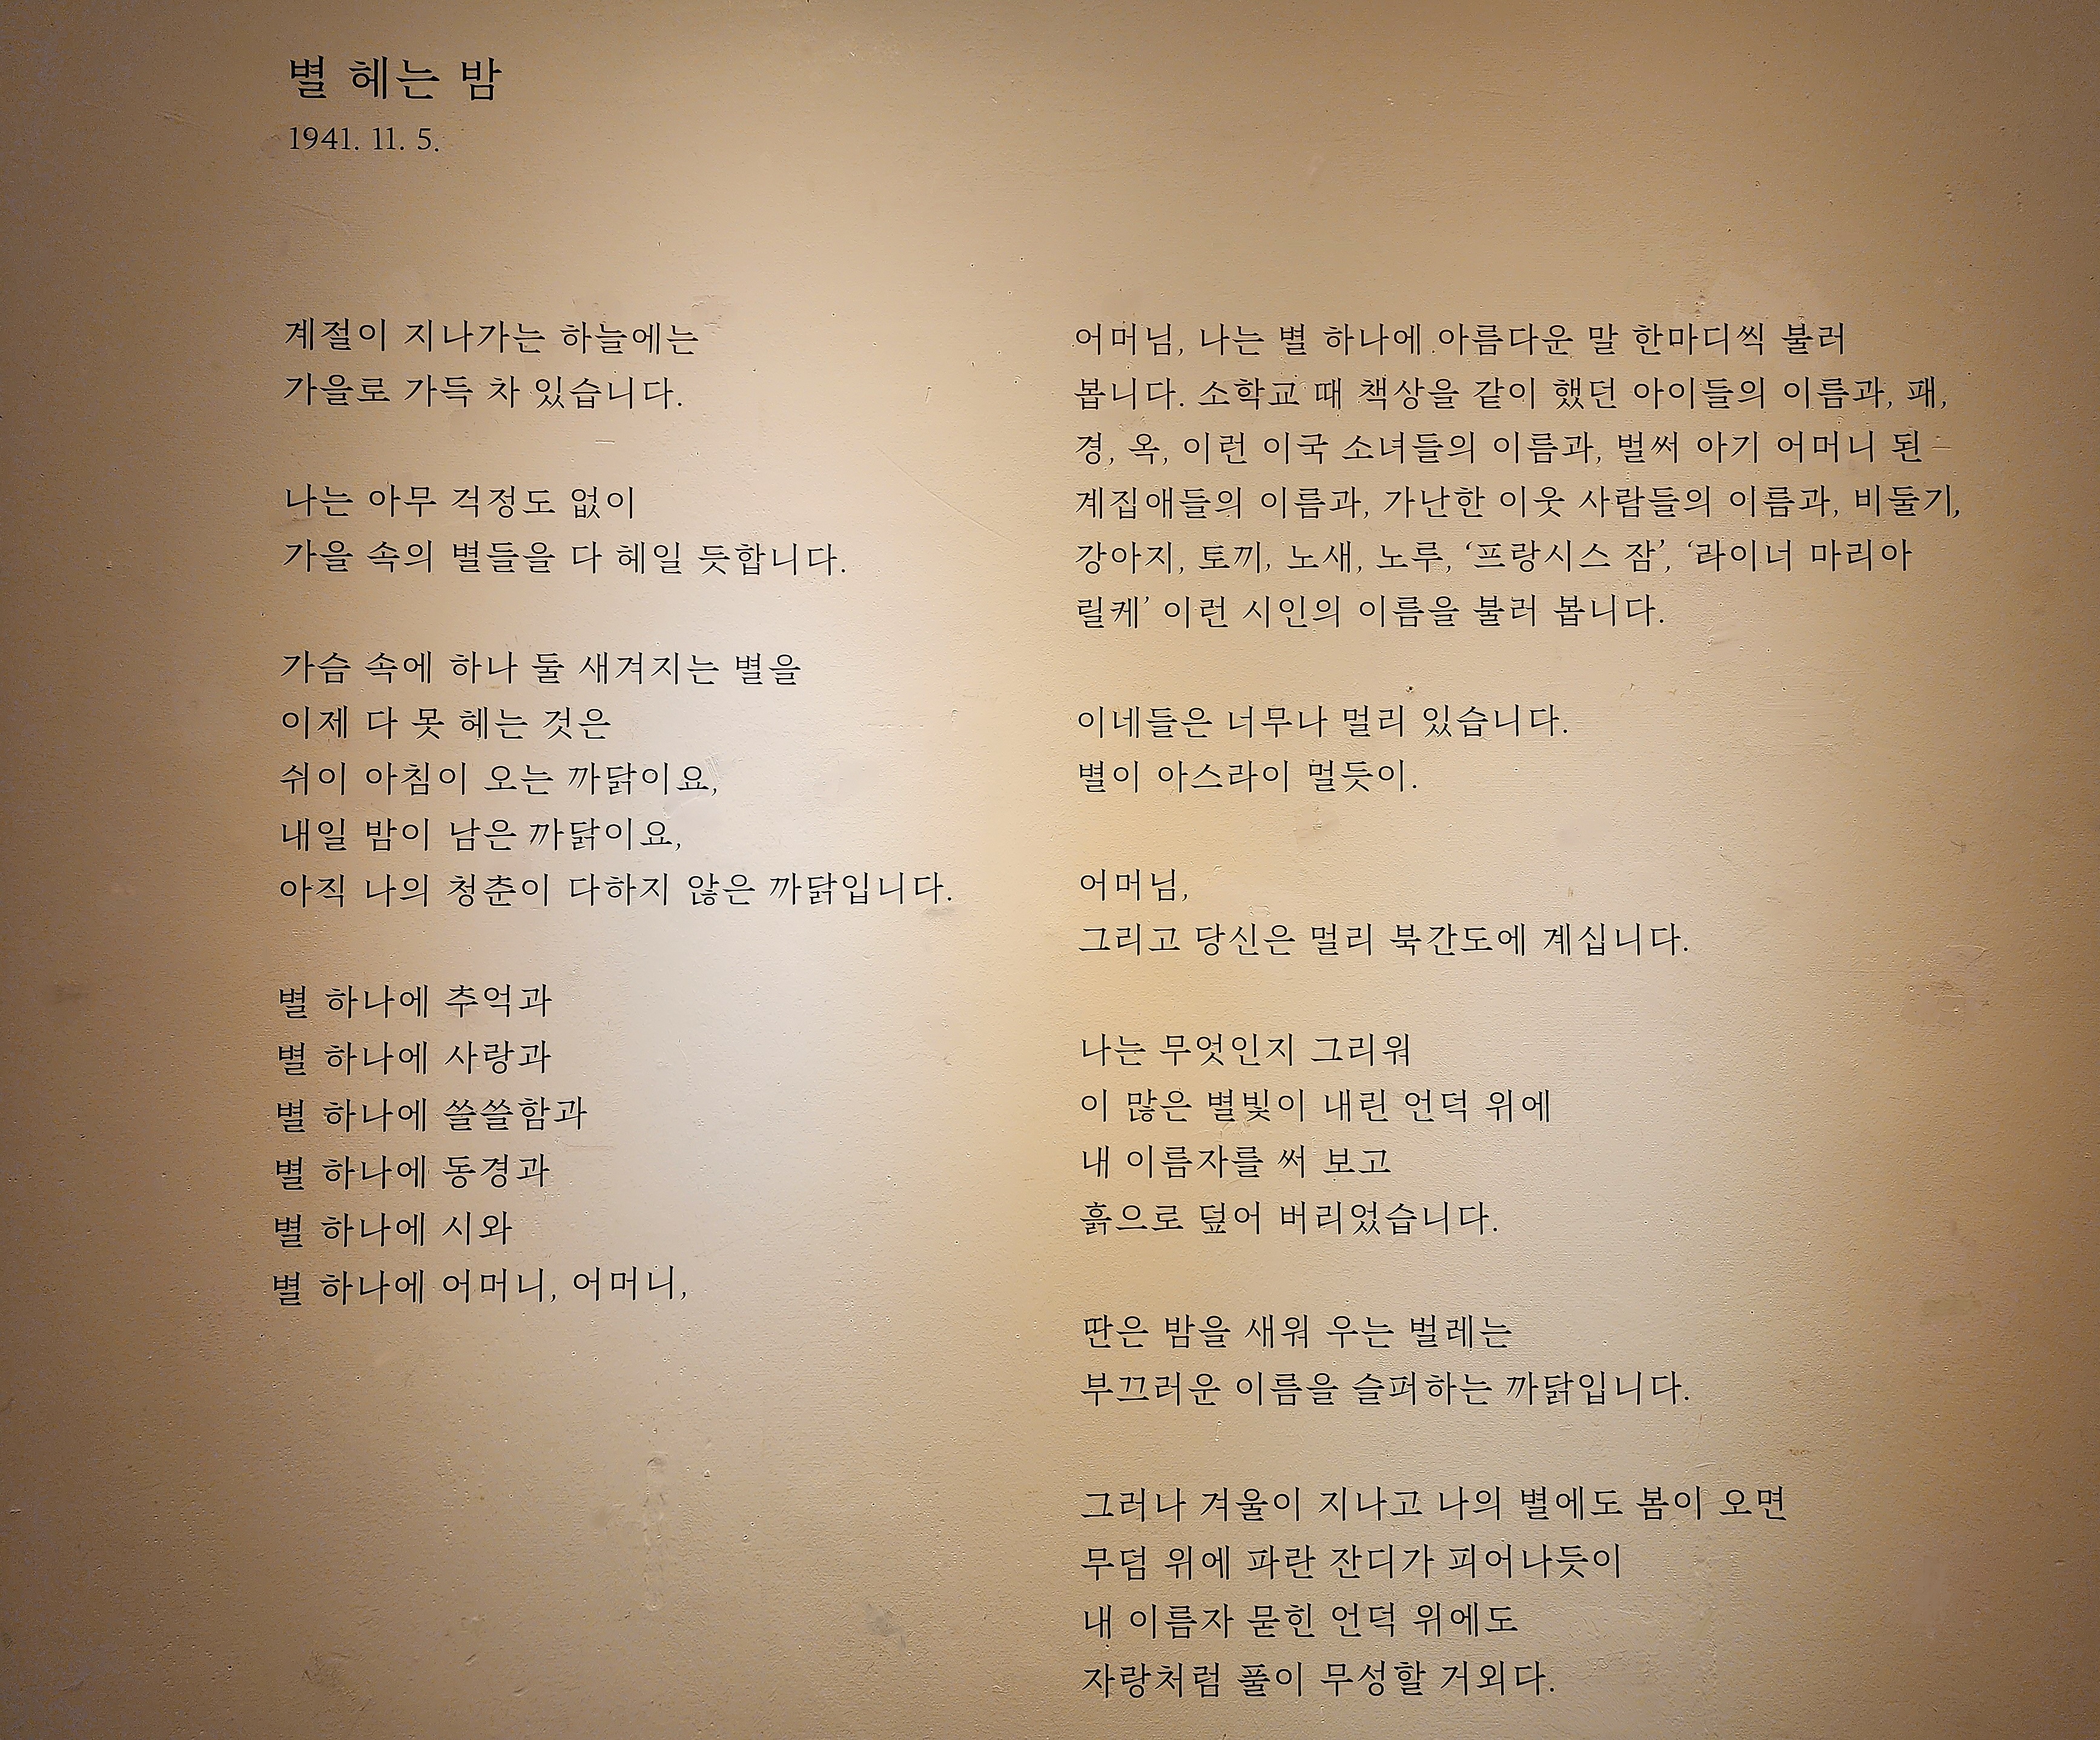 별 헤는 밤 / 윤동주_1941. 11. 5.